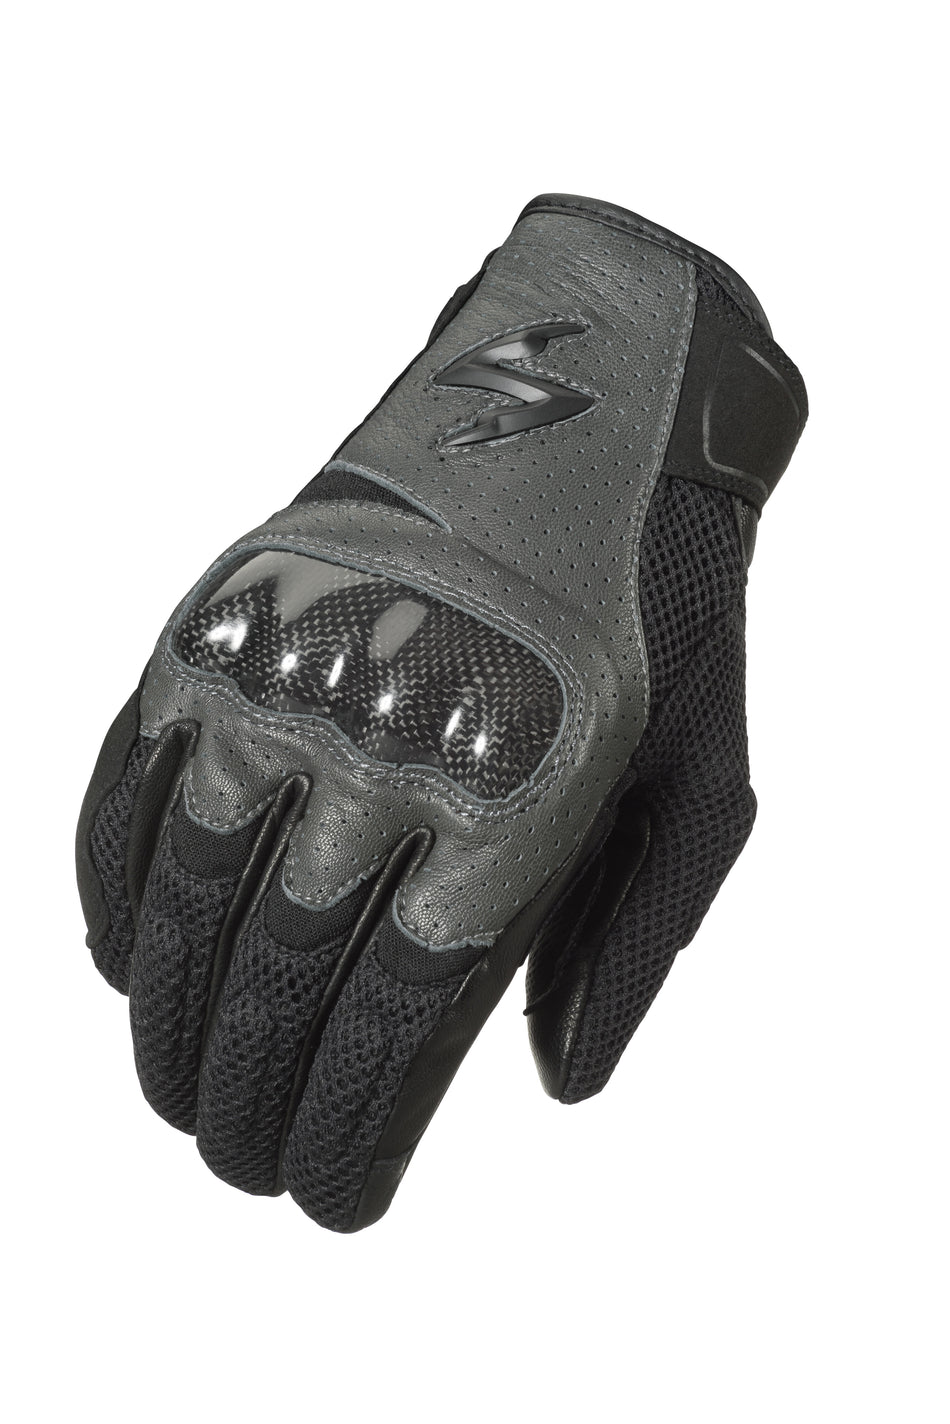 SCORPION EXO Vortex Air Gloves Grey Md G36-064